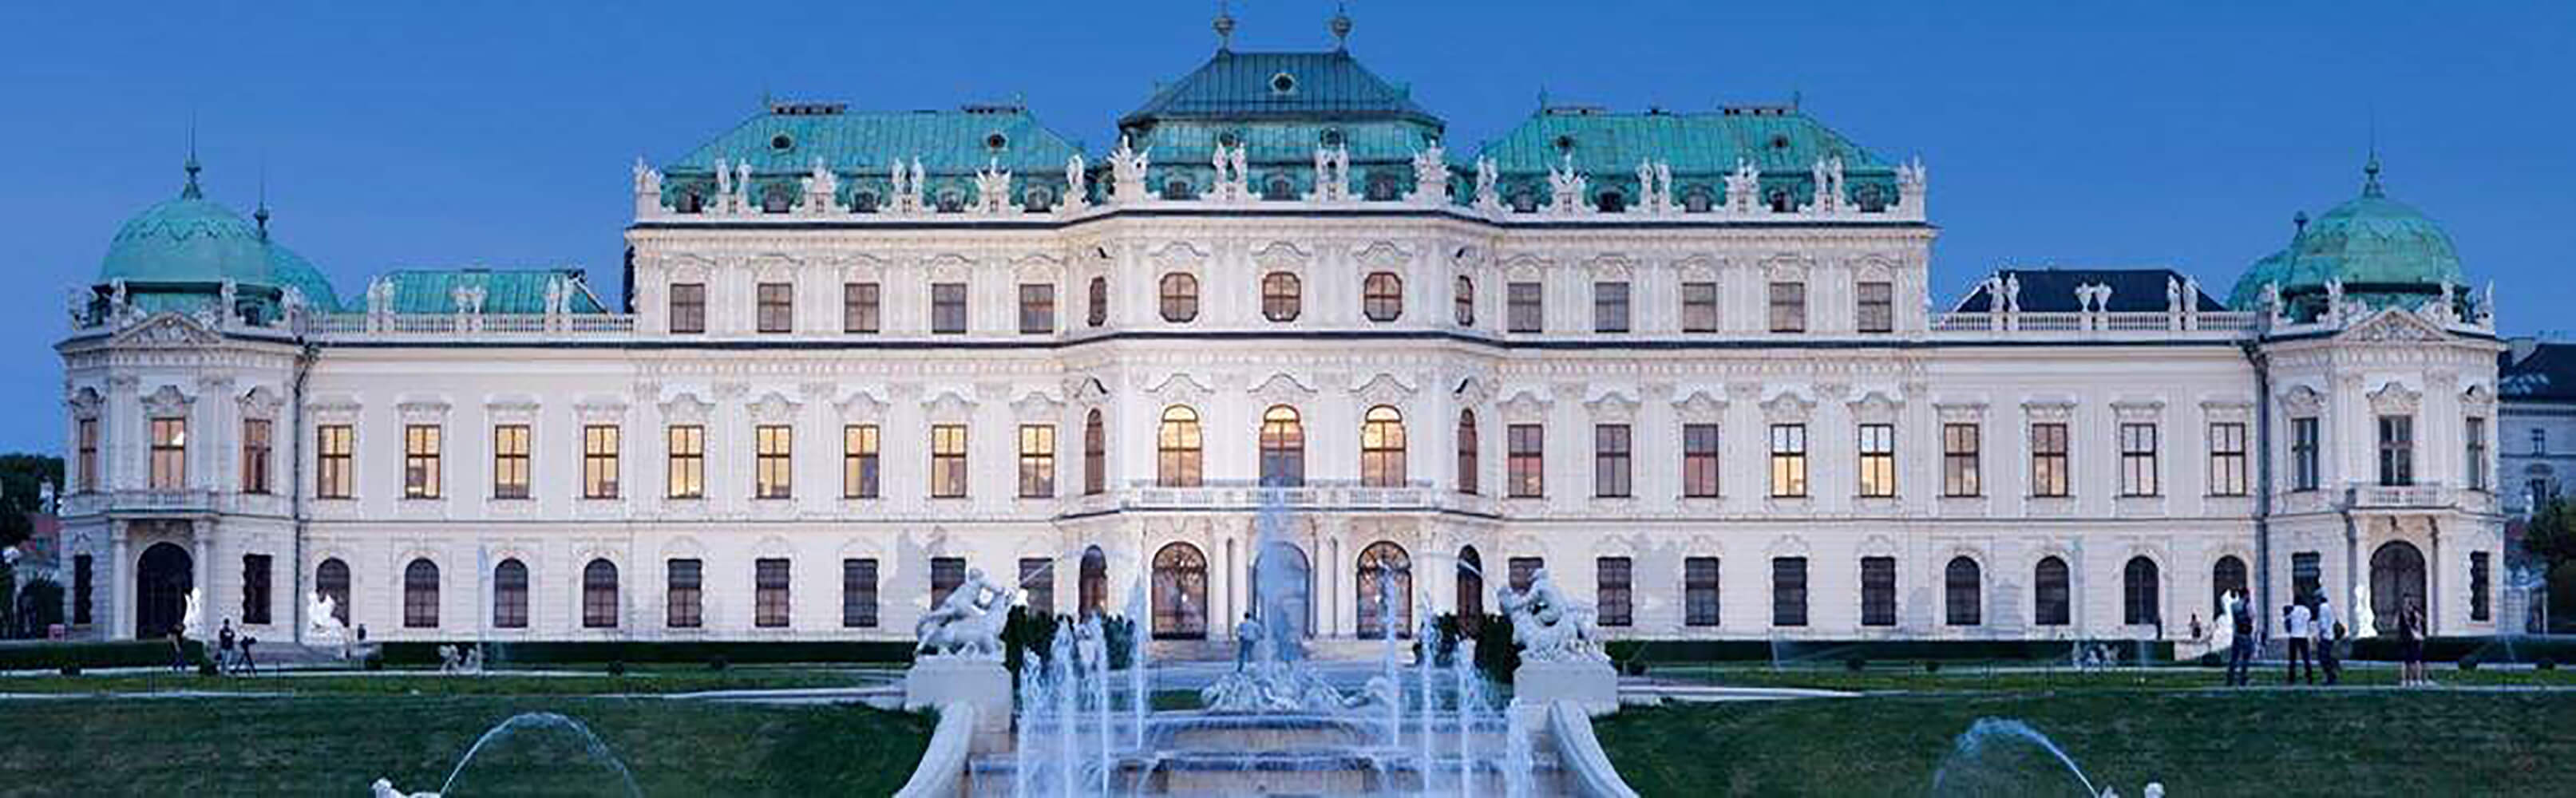 Das Belvedere Wien – die Welt der Kunst 1